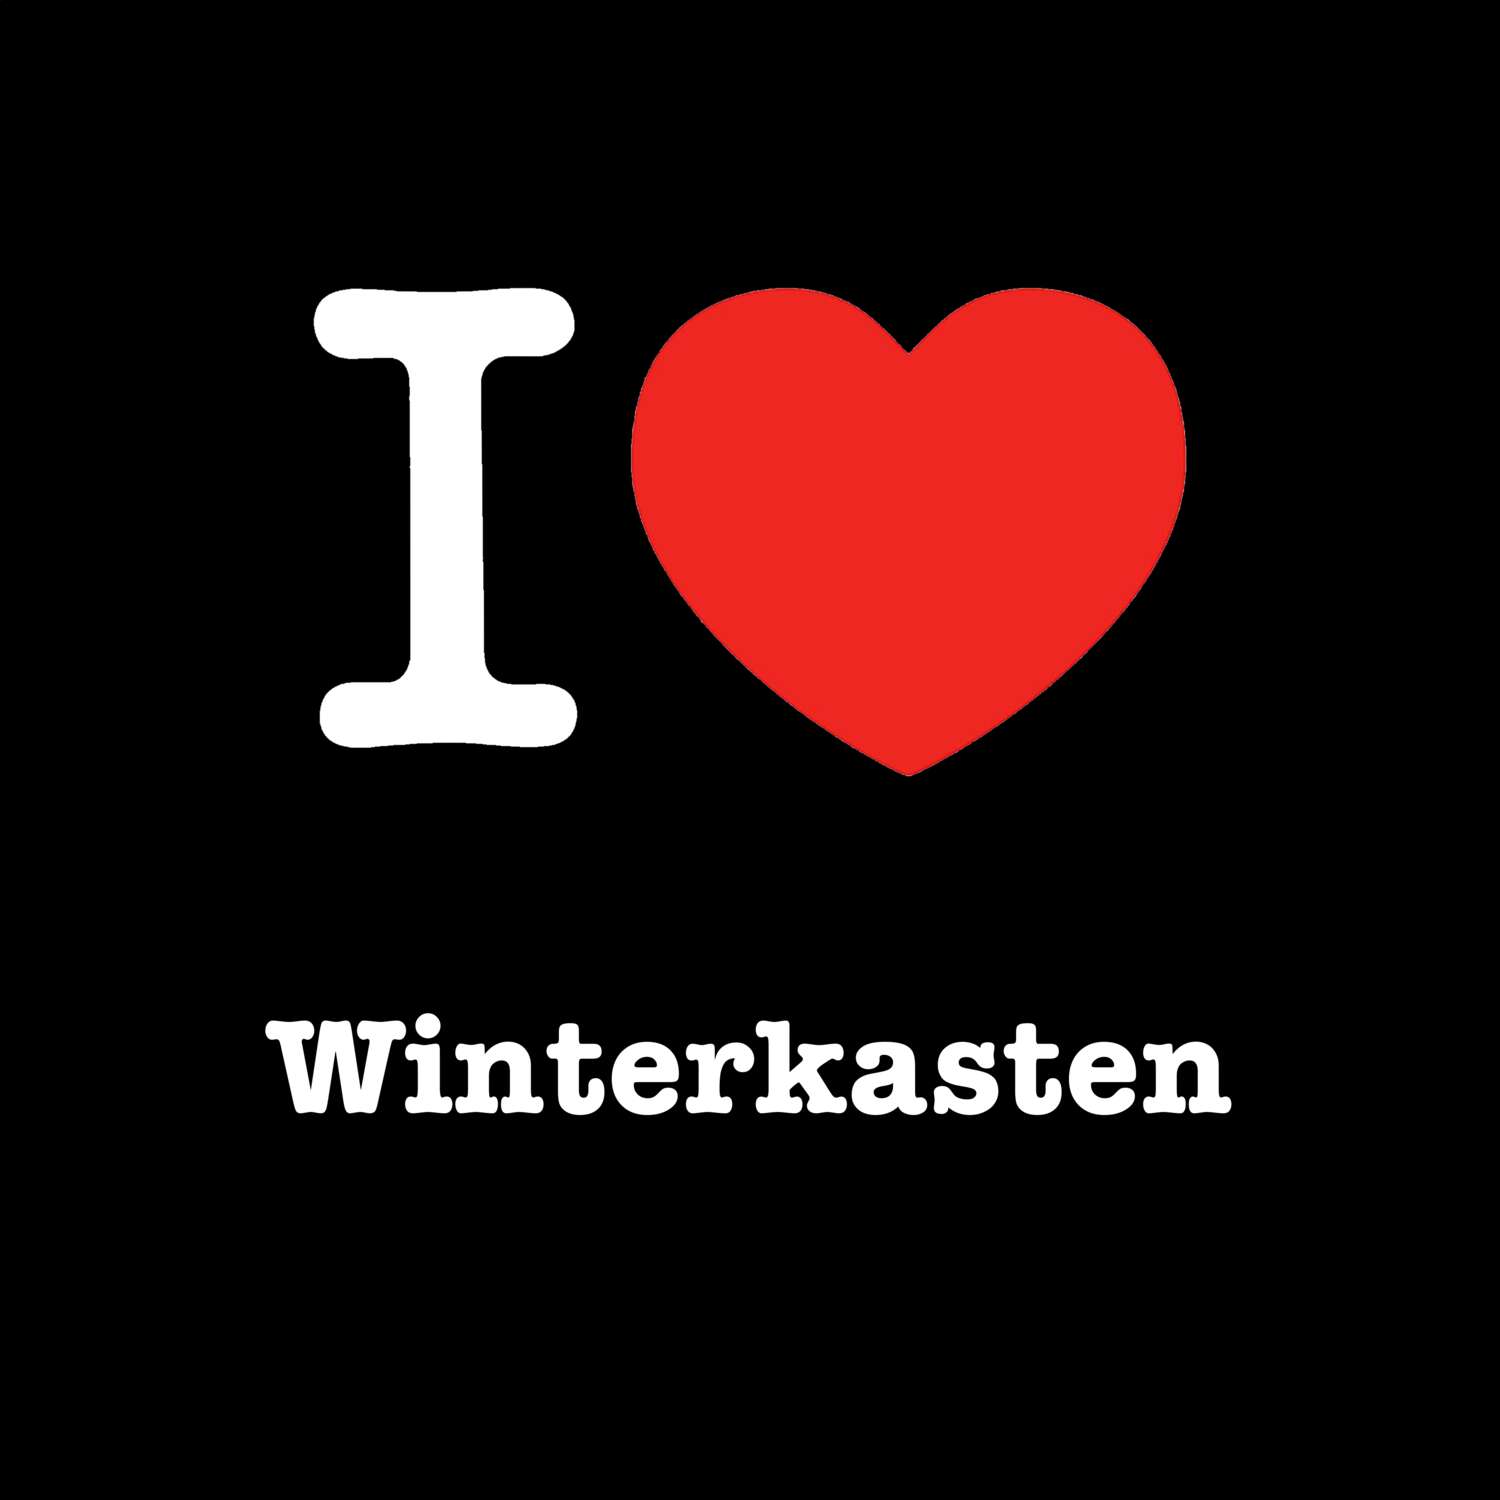 Winterkasten T-Shirt »I love«